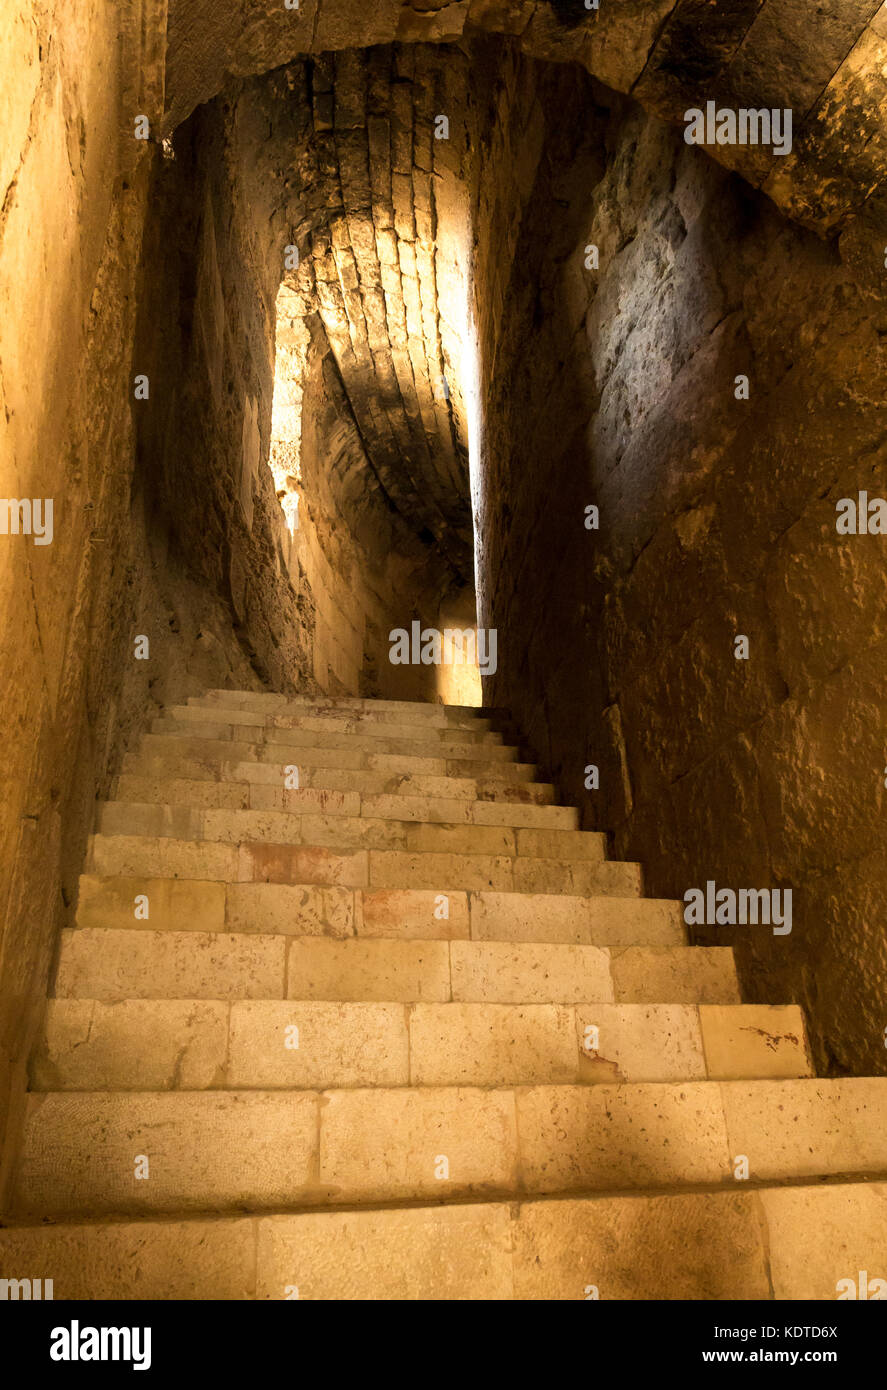 Tunnel interno e i passaggi per la parte superiore del Nord Theateamphitheater, città romana di Jerash, antica Gerasa, sito archeologico nel nord della Giordania, Medio Oriente Foto Stock